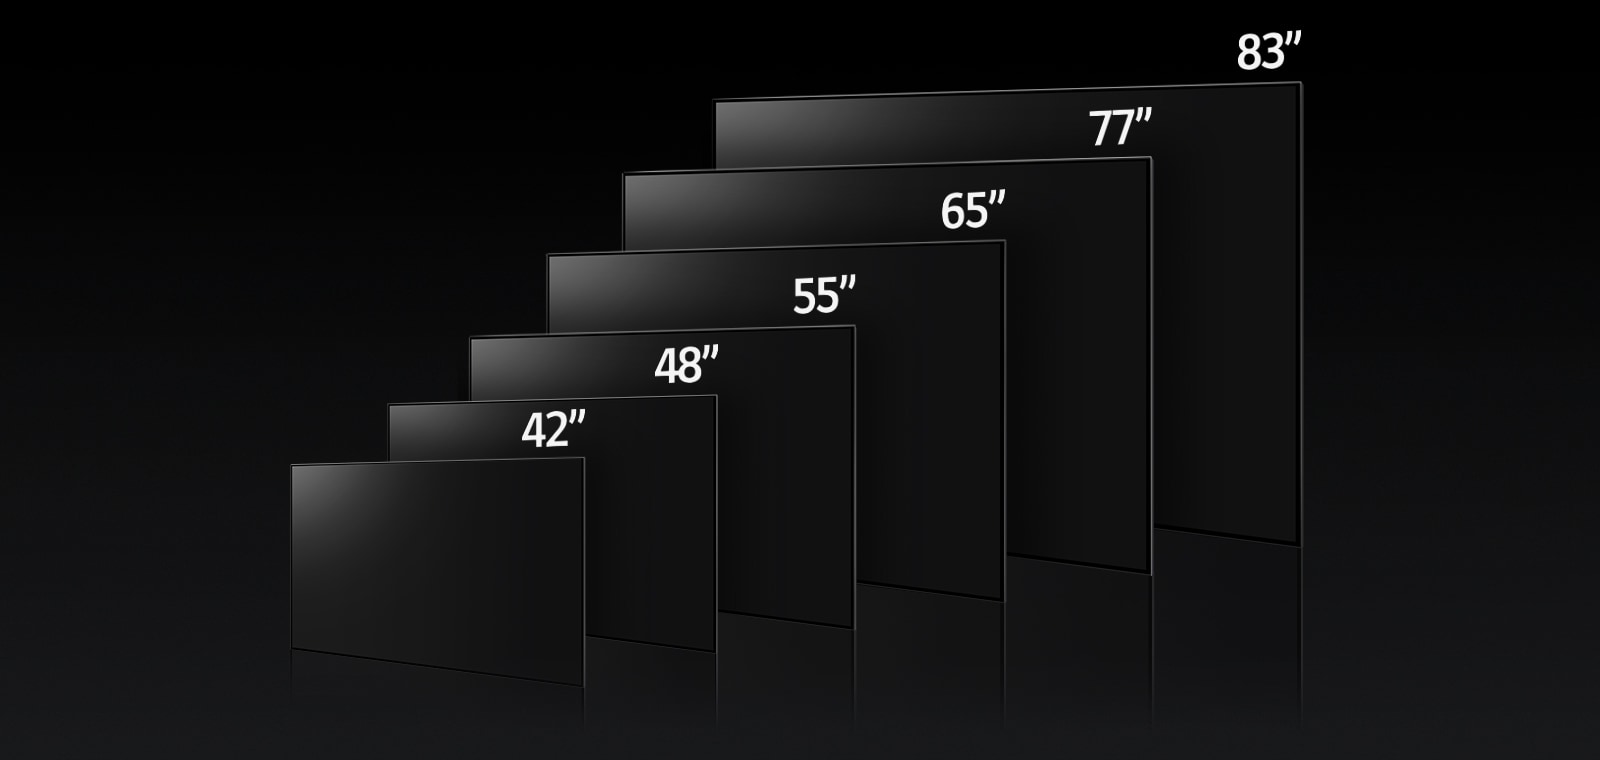 Μια εικόνα που συγκρίνει τις διαφορετικές διαστάσεις της LG OLED C3, δείχνοντας τα μοντέλα 42